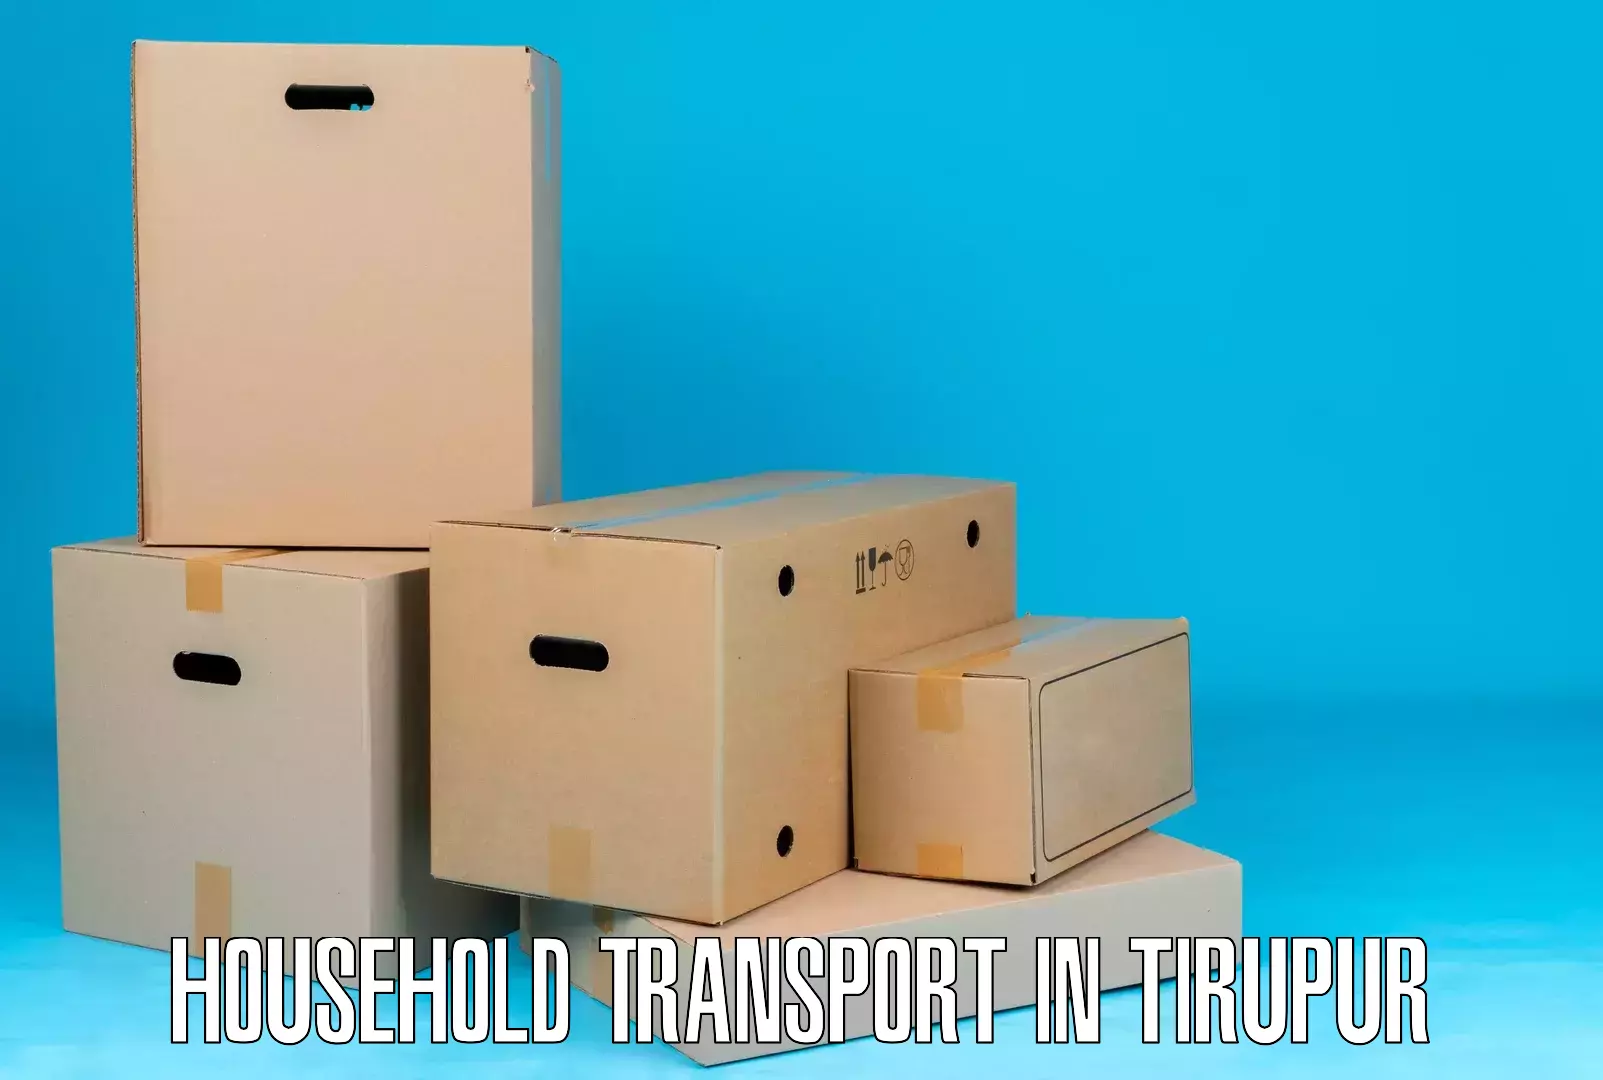 Professional goods transport in Tirupur